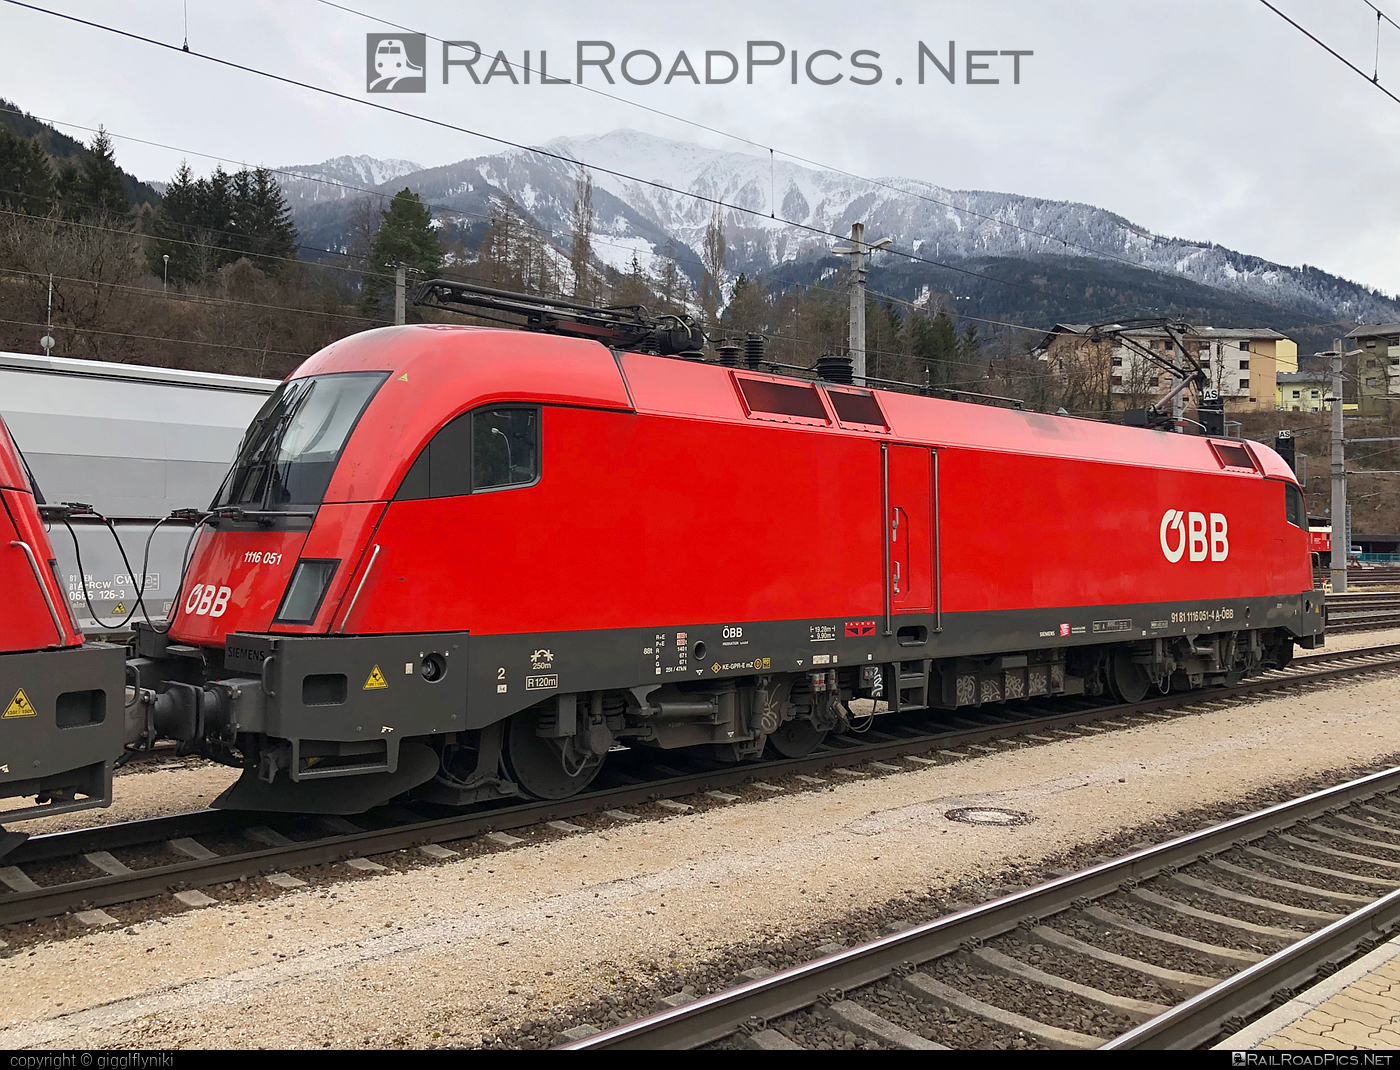 Siemens ES 64 U2 - 1116 051 operated by Rail Cargo Austria AG #es64 #es64u2 #eurosprinter #obb #osterreichischebundesbahnen #rcw #siemens #siemensEs64 #siemensEs64u2 #siemenstaurus #taurus #tauruslocomotive